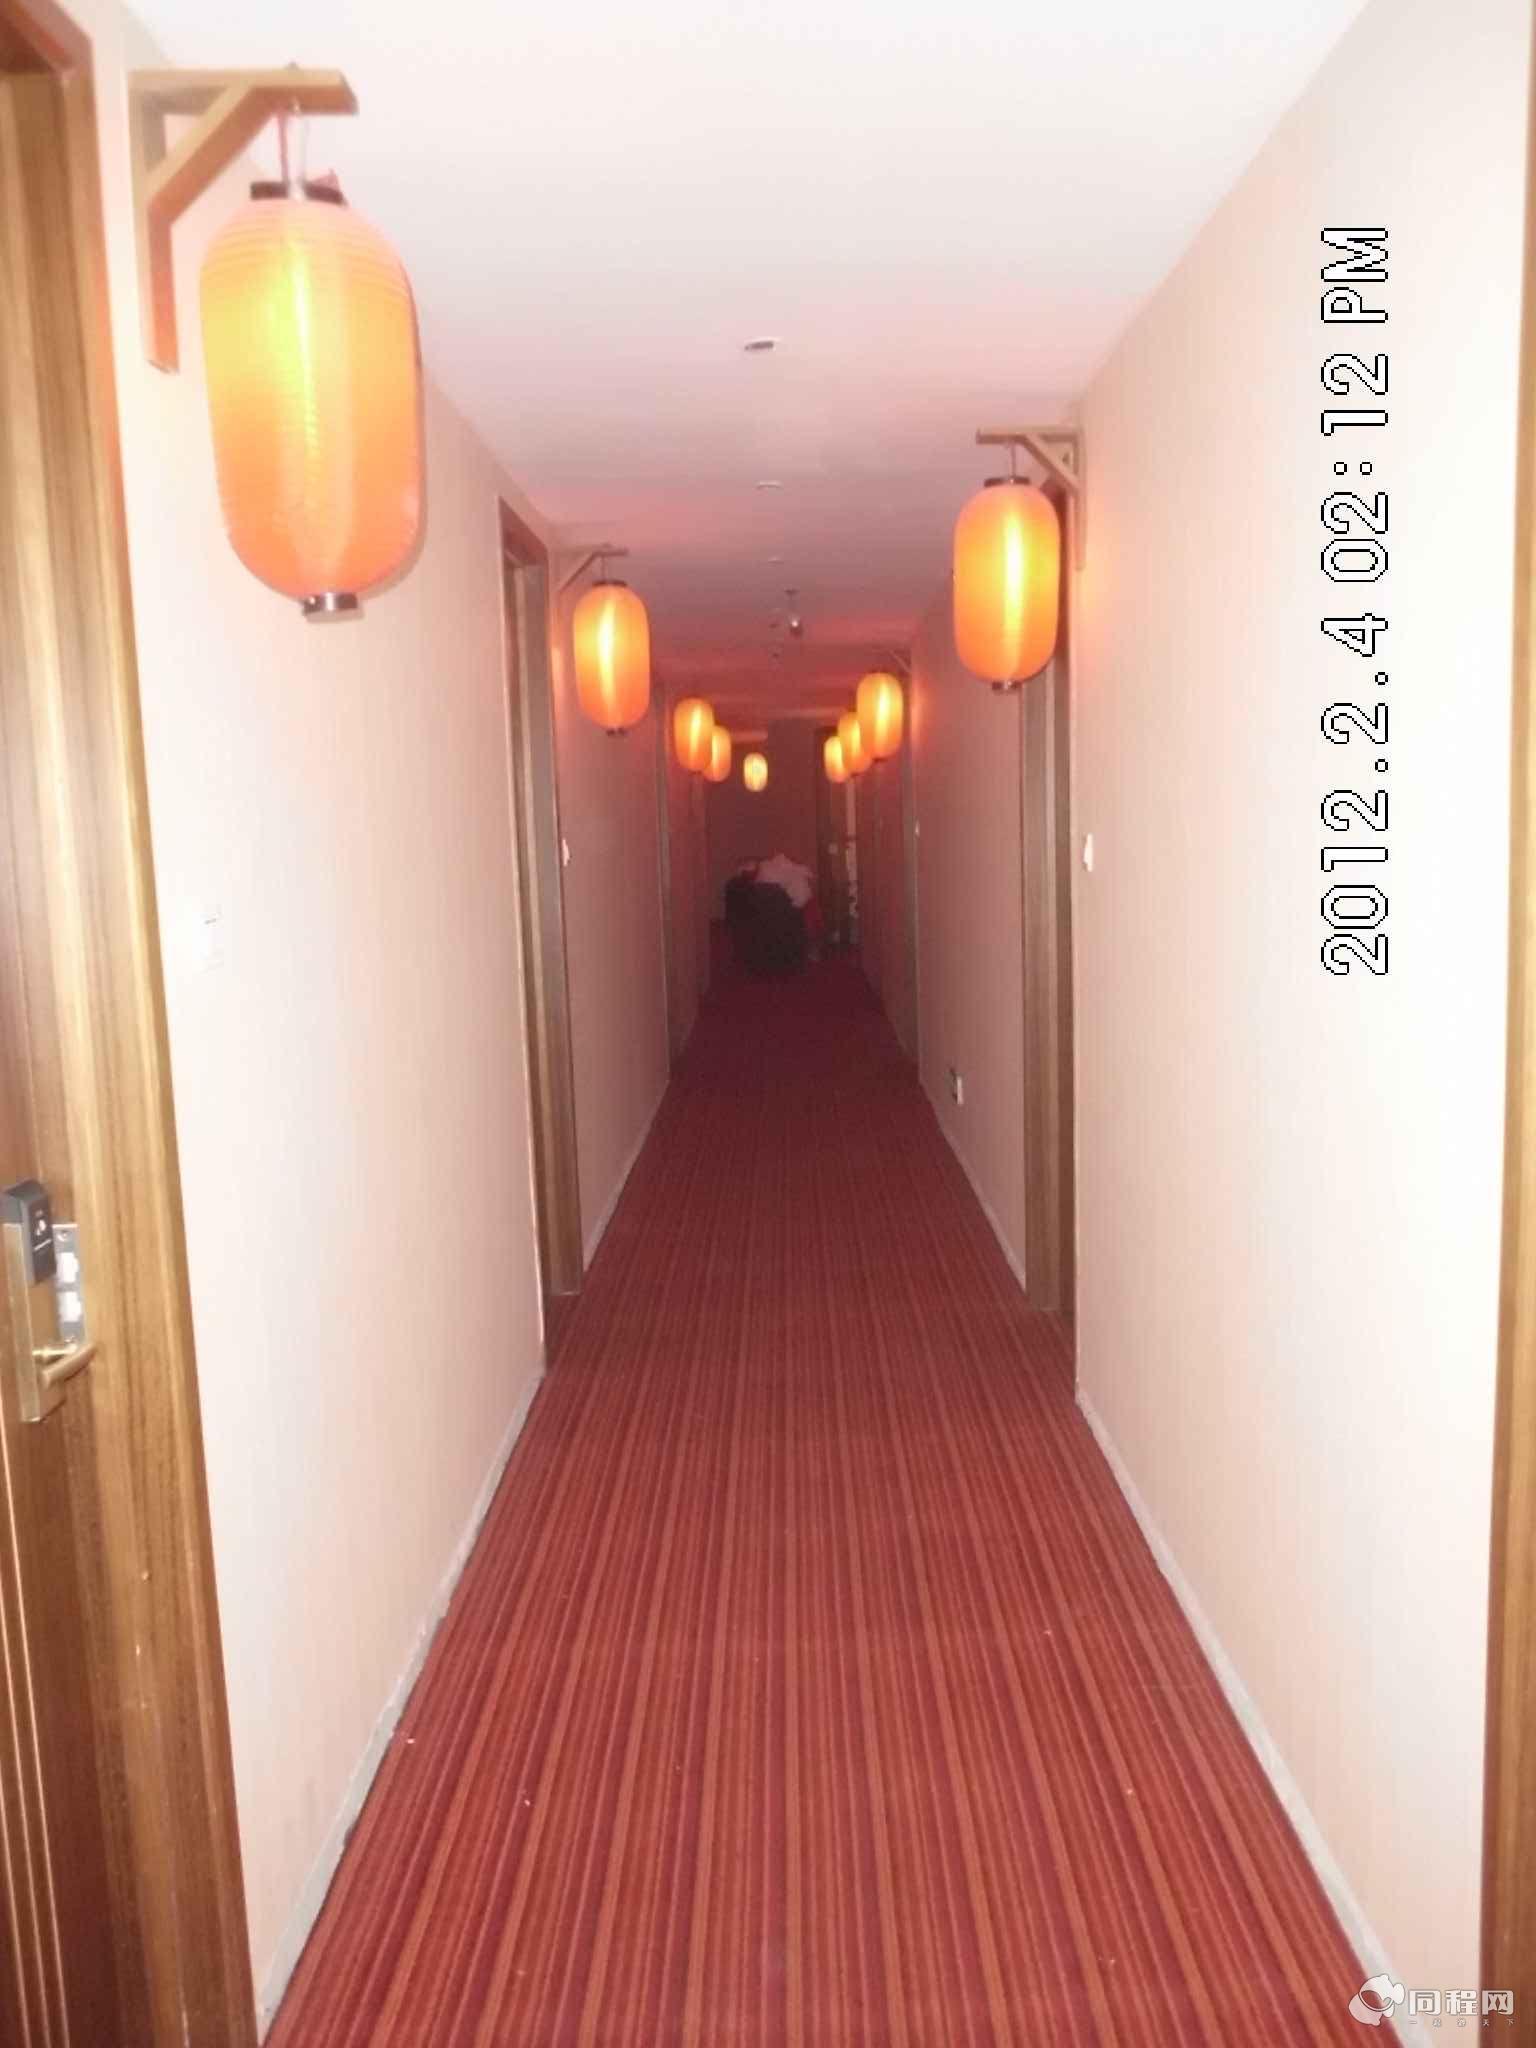 合肥万里路酒店图片走廊[由15095hsyphb提供]